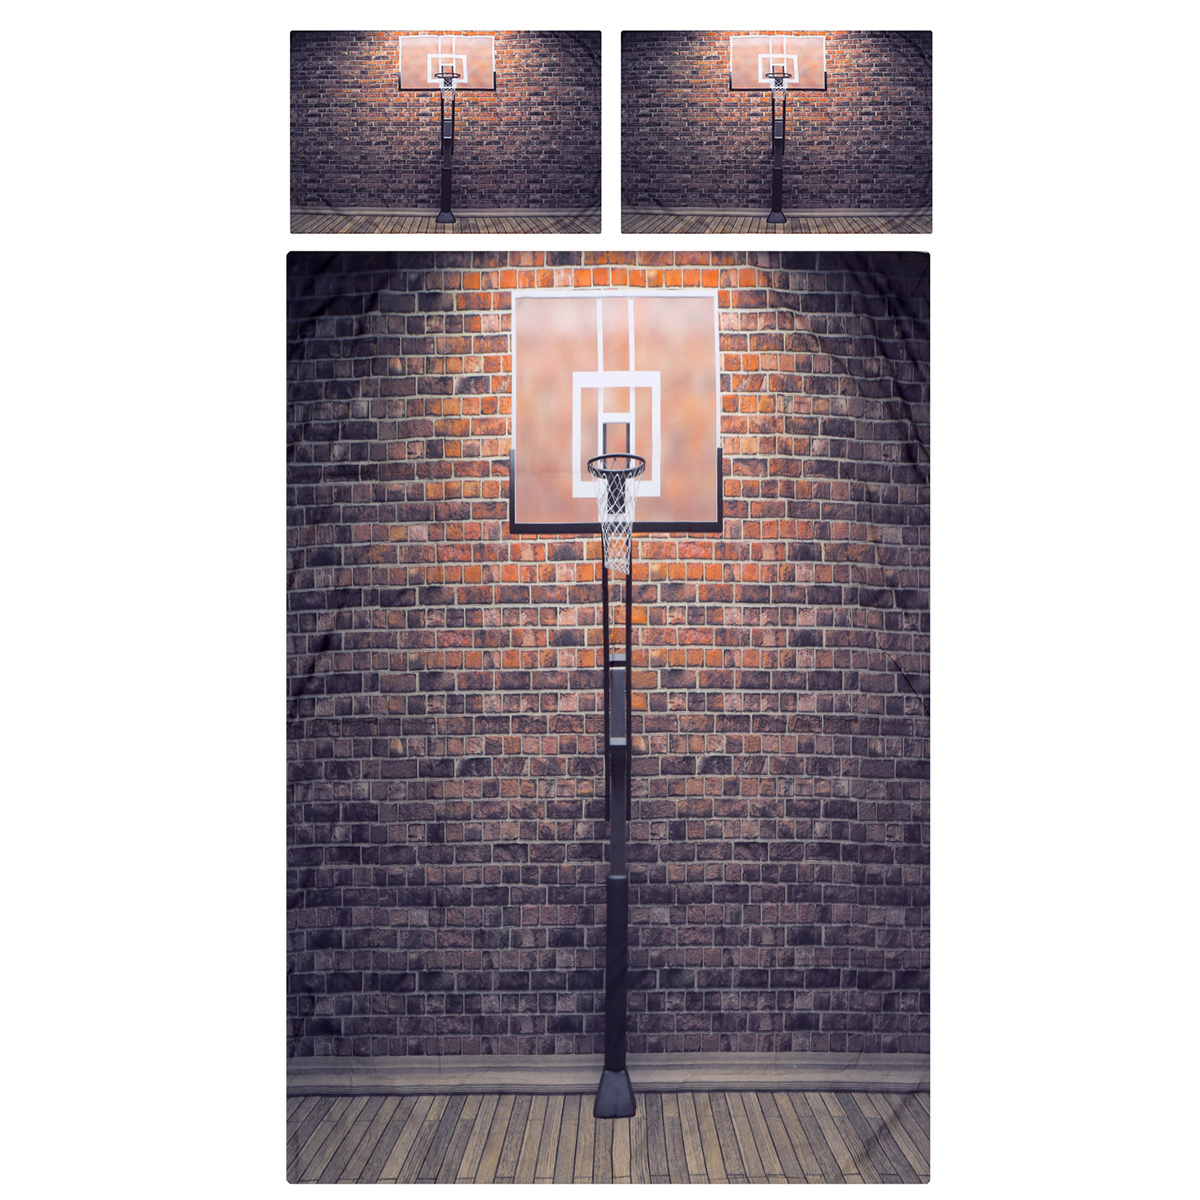 3D-Printed-Football-Basketball-Bowling-GA-Bedding-Set-Bedlinen-Duvet-Cover-Pillowcases-for-Bedding-S-1788703-11